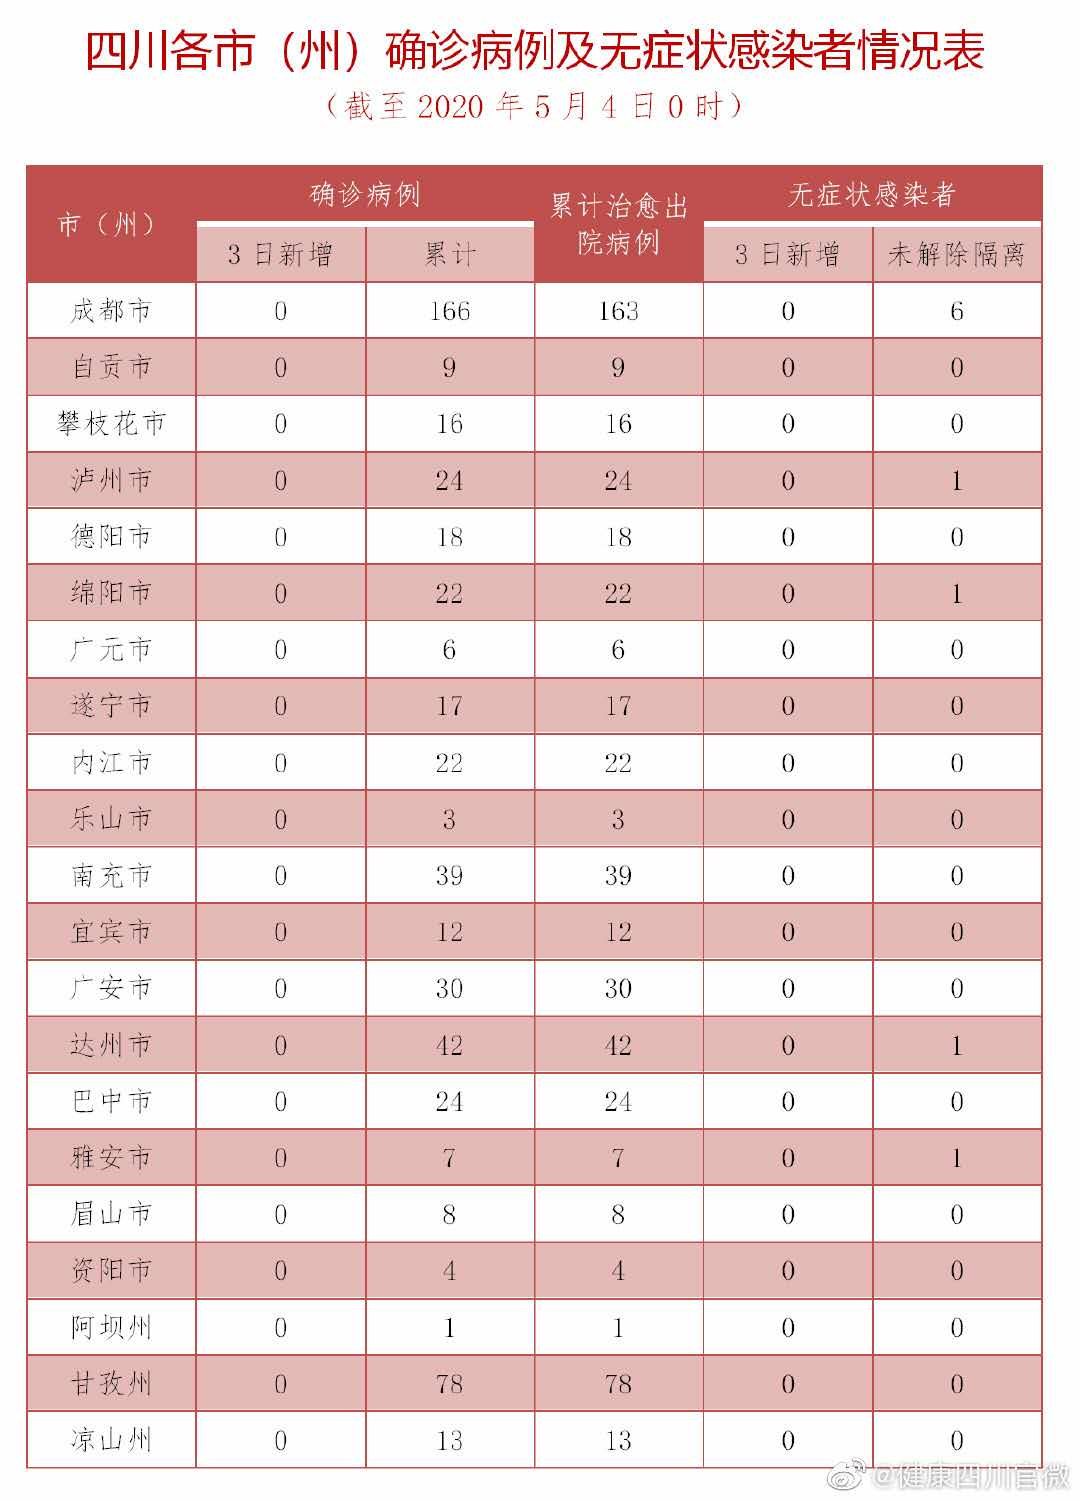 5月3日四川无新增确诊病例 220人尚在接受医学观察